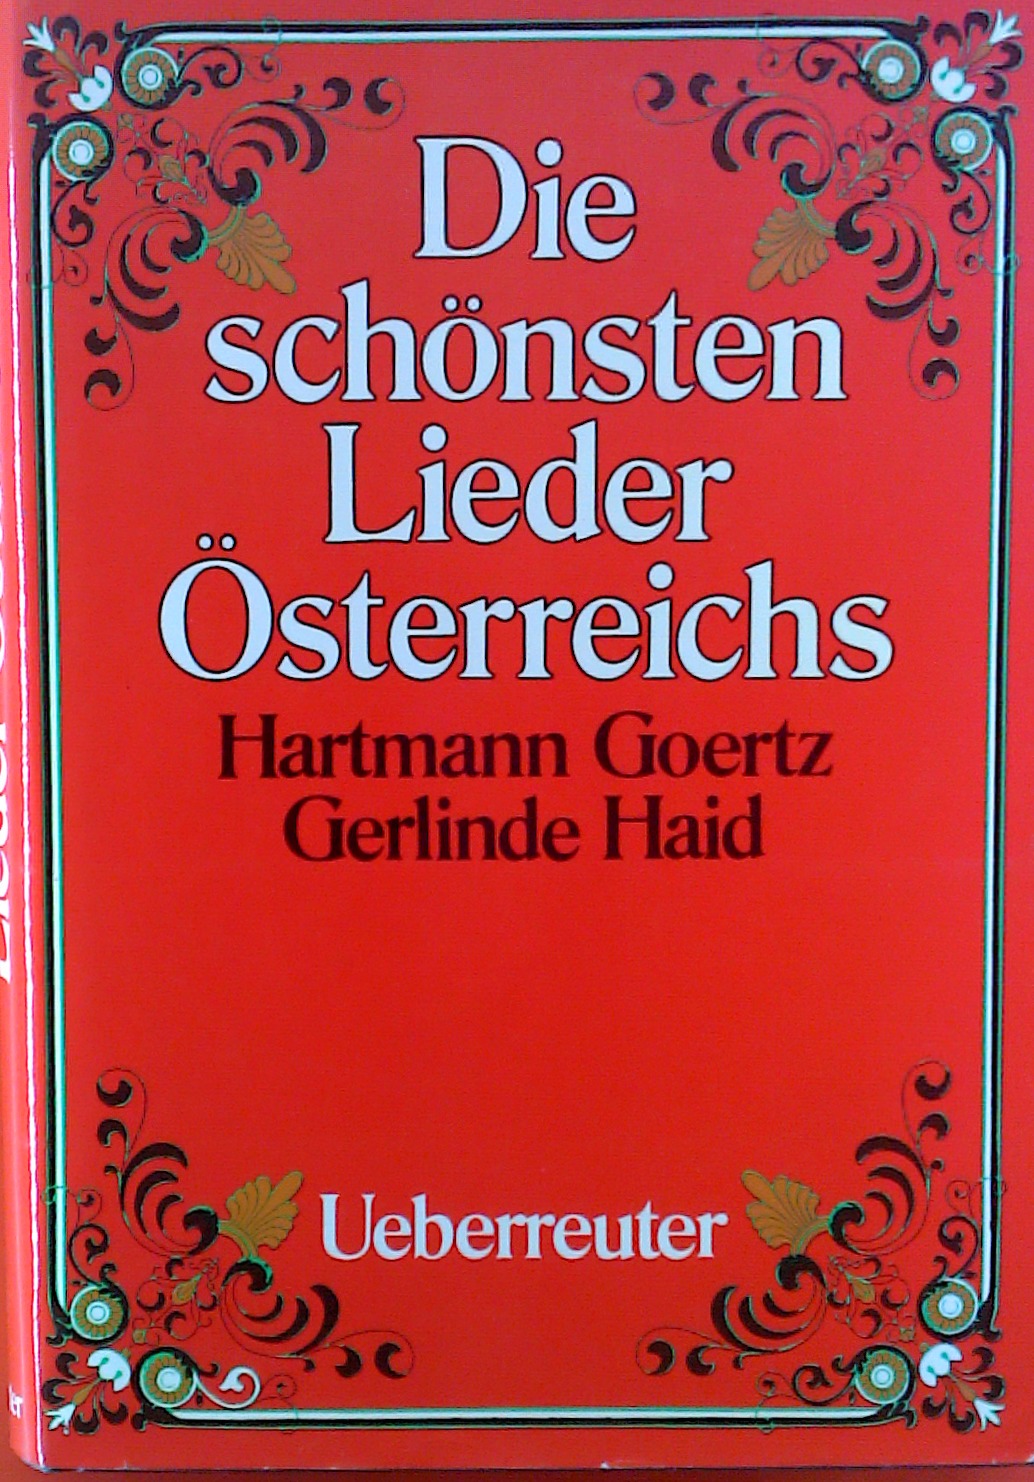 Die schönsten Lieder Österreichs - Hartmann Goertz, Gerlinde Haid